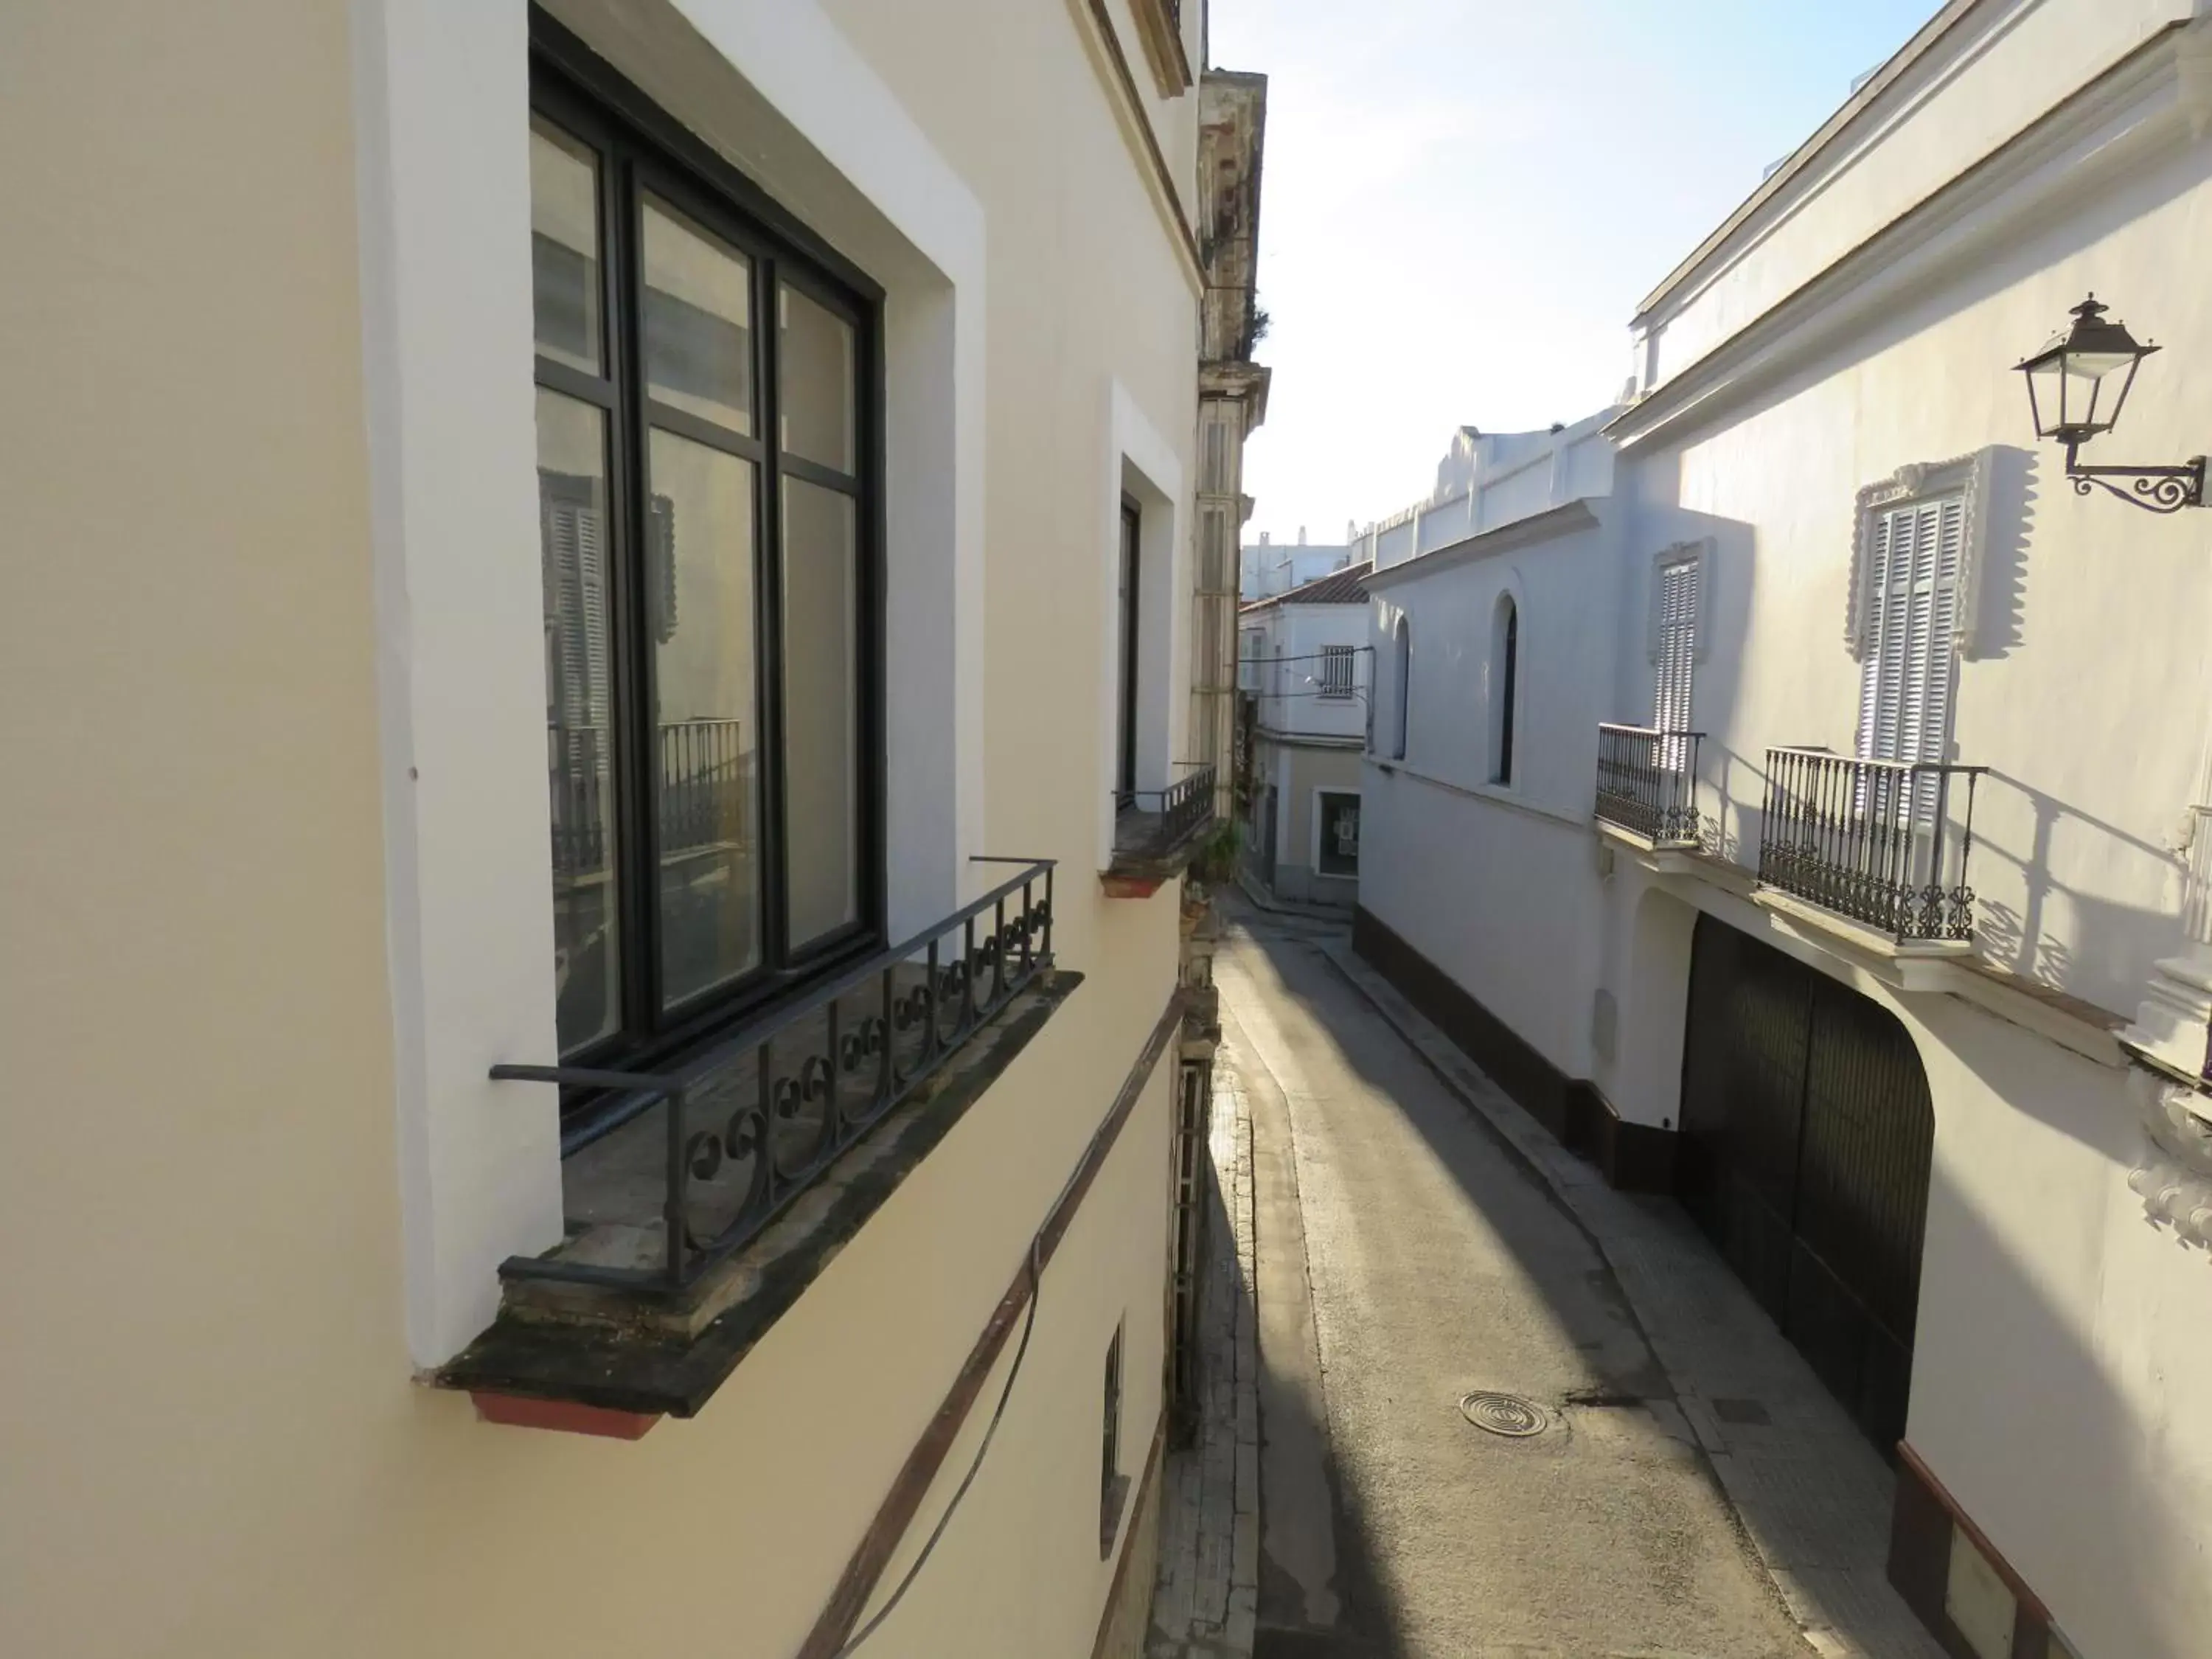 Property building, Balcony/Terrace in Casa de las Especias Hotel Boutique